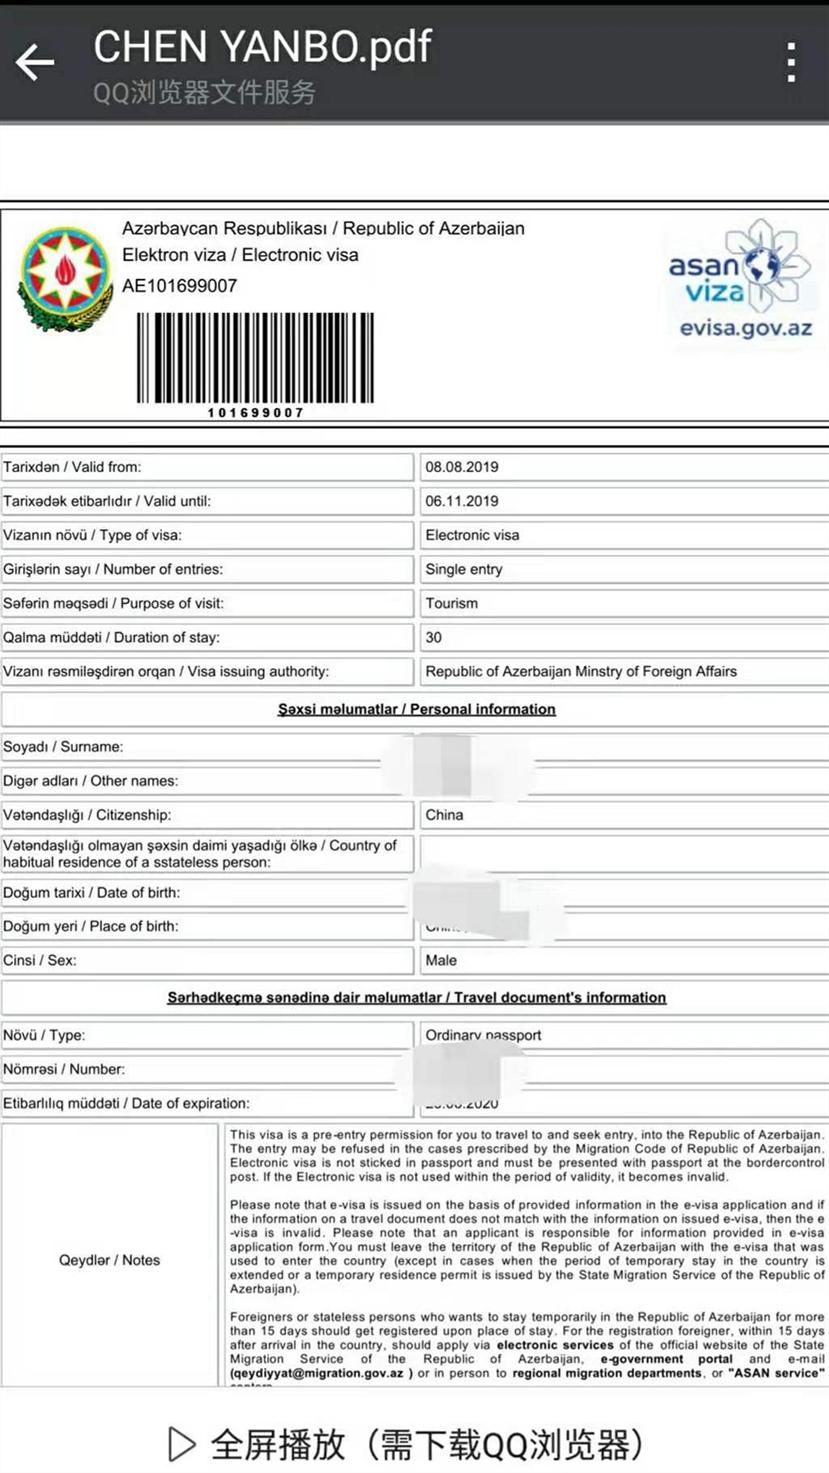 如何申请格鲁吉亚 阿塞拜疆旅游签证 需要资料及费用 10多年从业 经验丰富